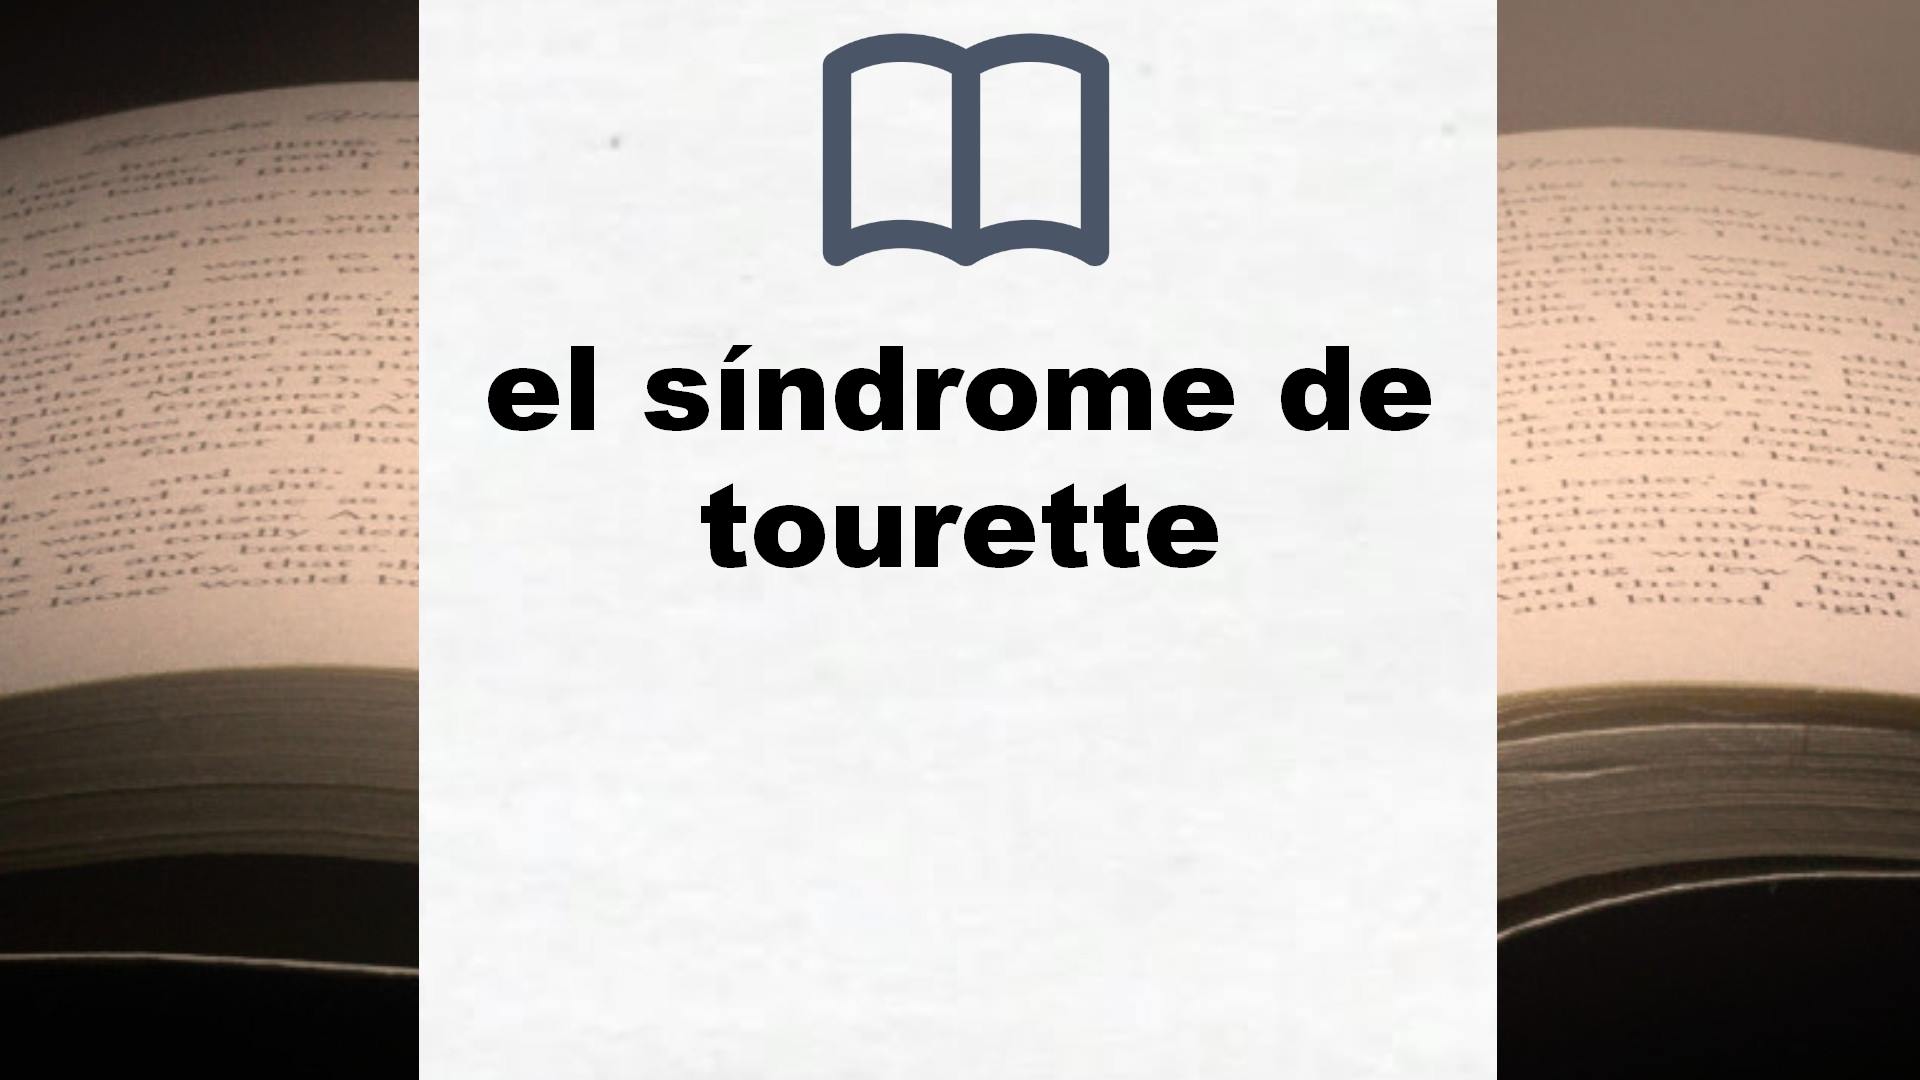 Libros sobre el síndrome de tourette